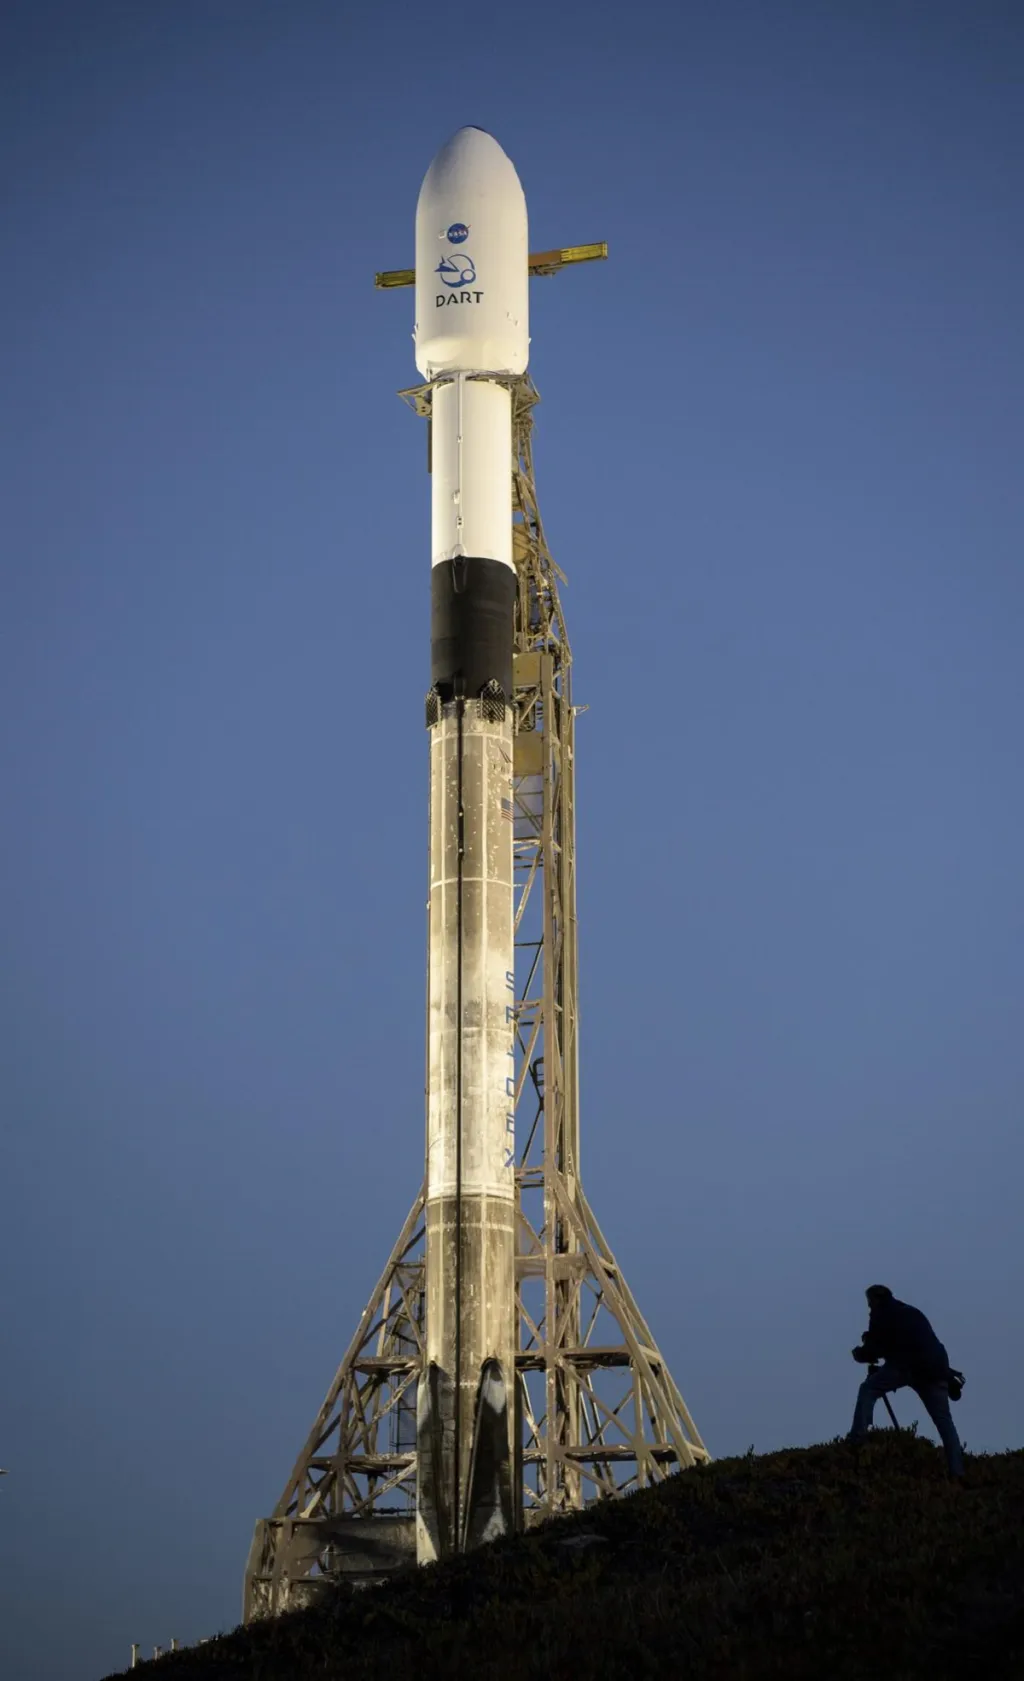 Raketa Falcon 9 společnosti SpaceX s kosmickou lodí DART (Double Asteroid Redirection Test) na palubě je vidět při východu slunce v úterý 23. listopadu 2021 na kosmodromu 4E na Vandenbergově základně v Kalifornii. DART je první plnohodnotný test planetární obrany na světě, který demonstruje jednu z metod technologie odklonění asteroidů